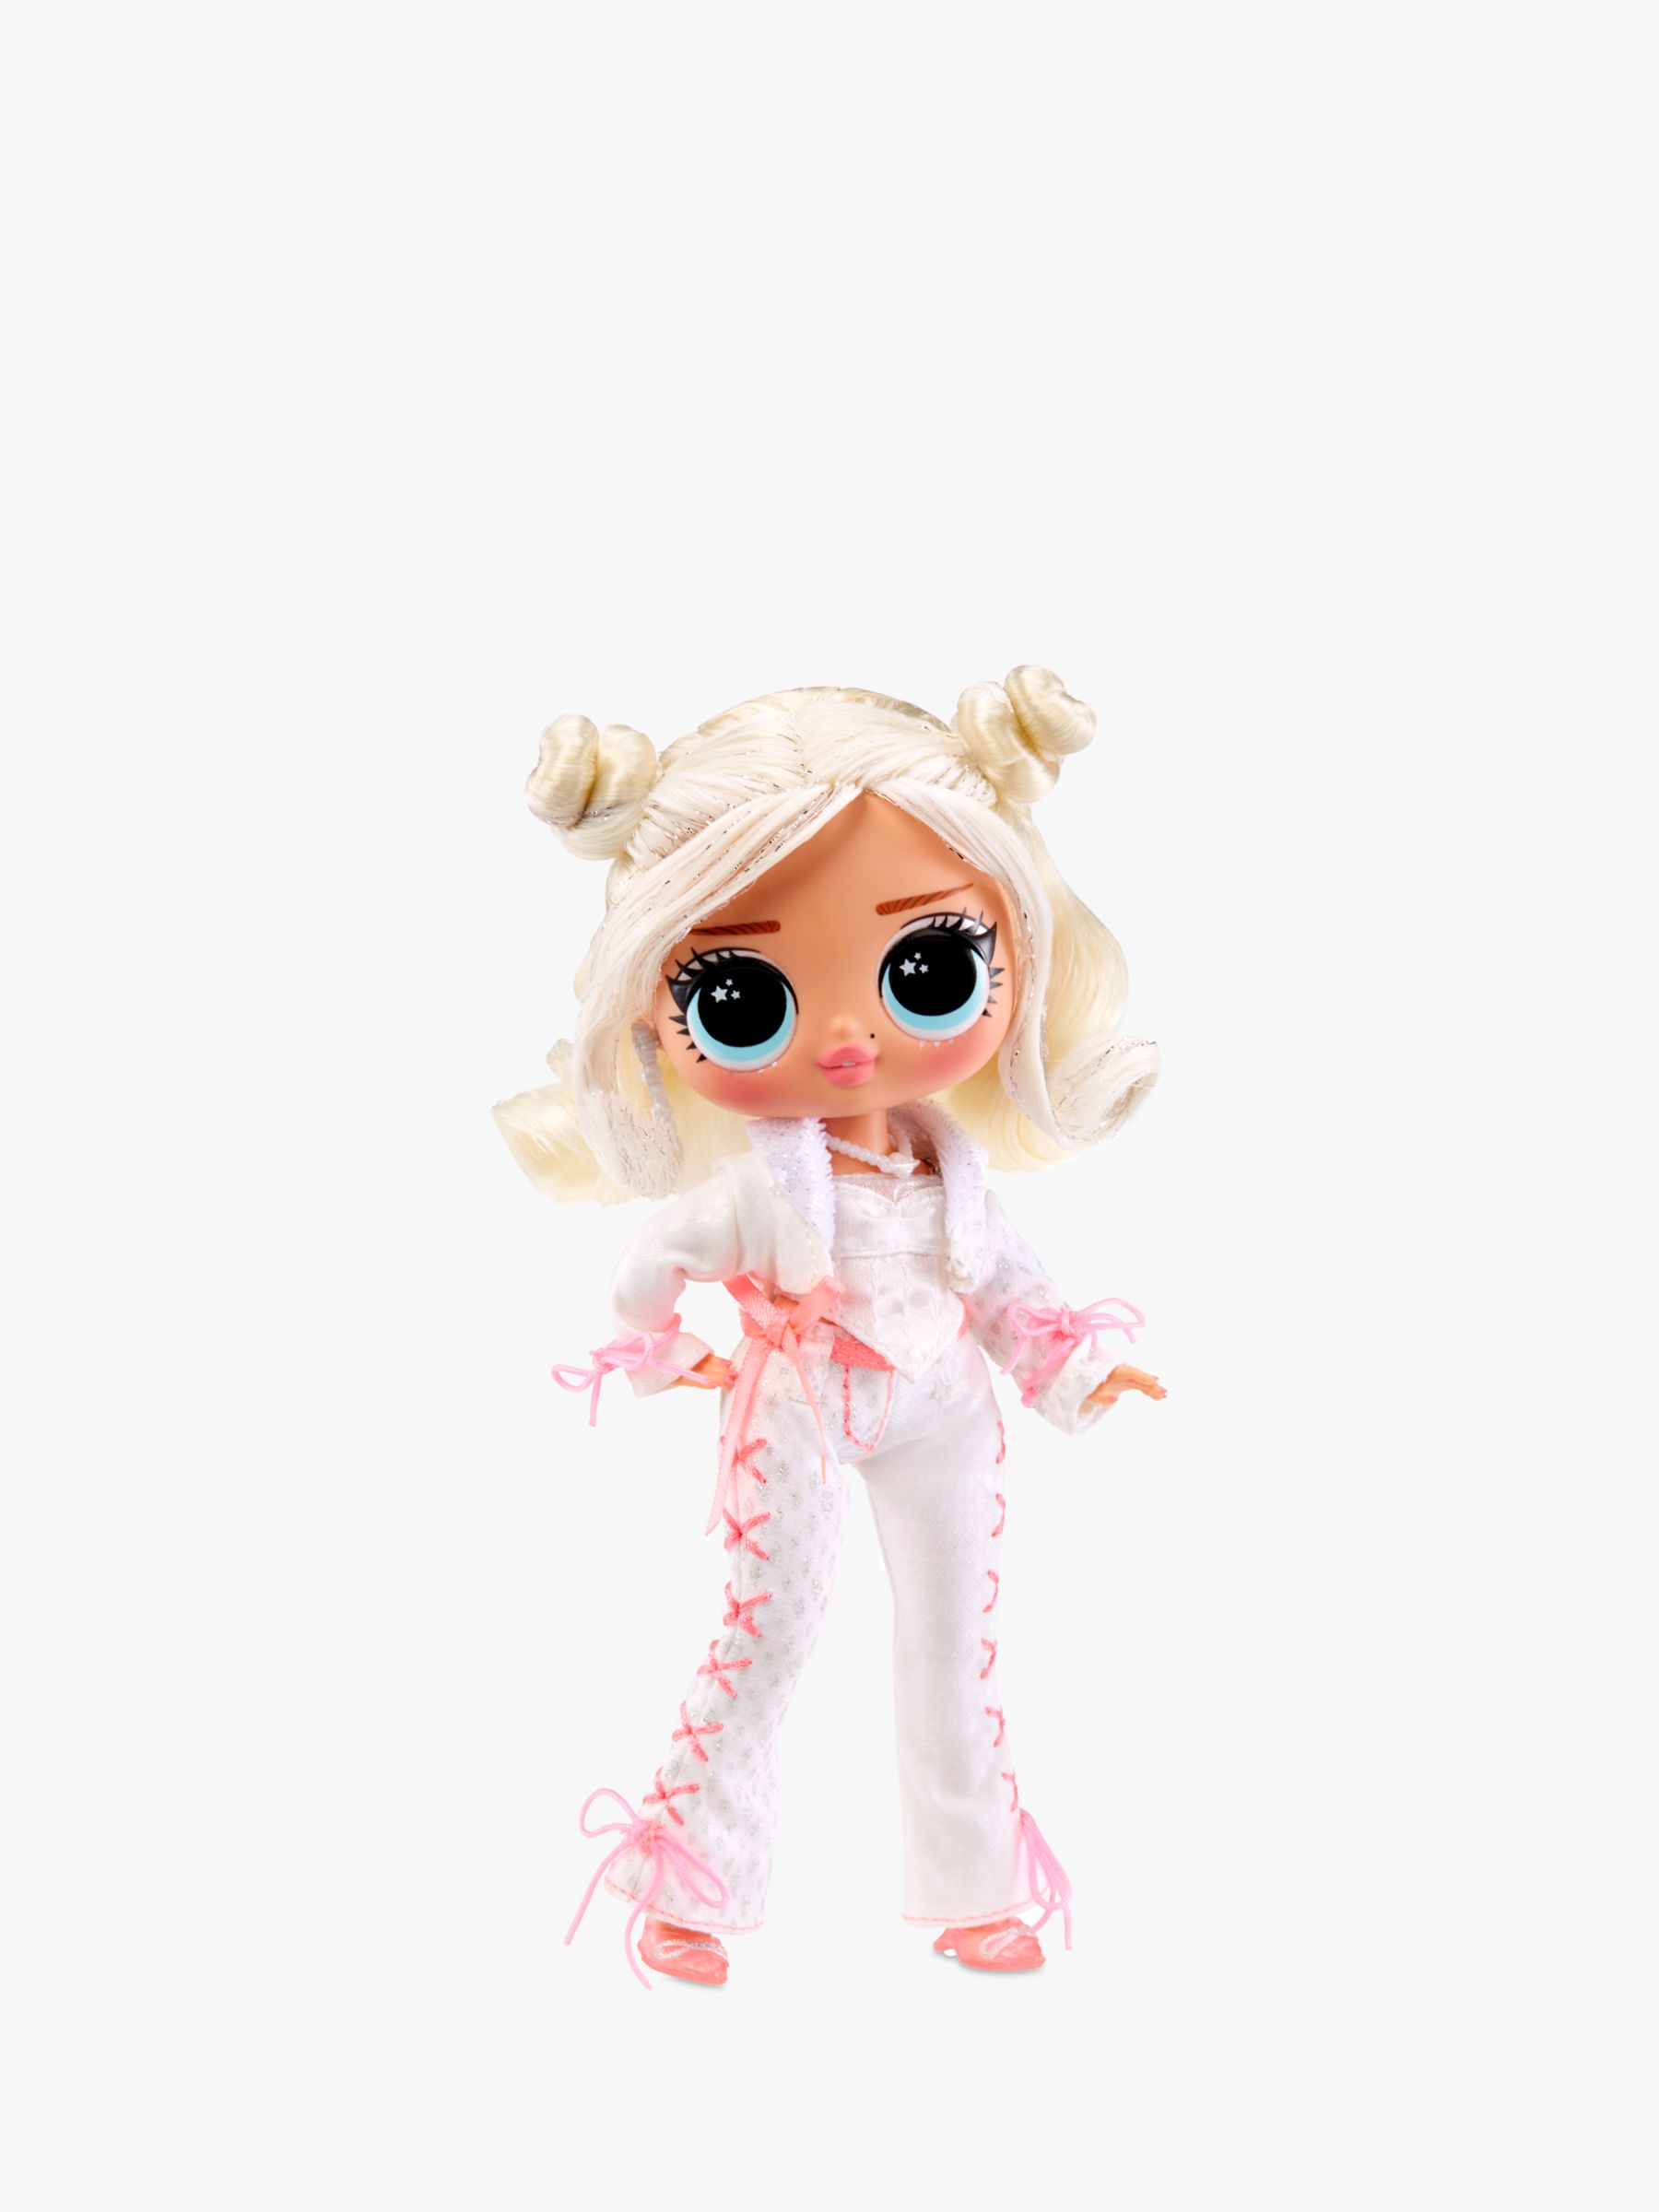  Surprise! Tween Marilyn Star Fashion Doll